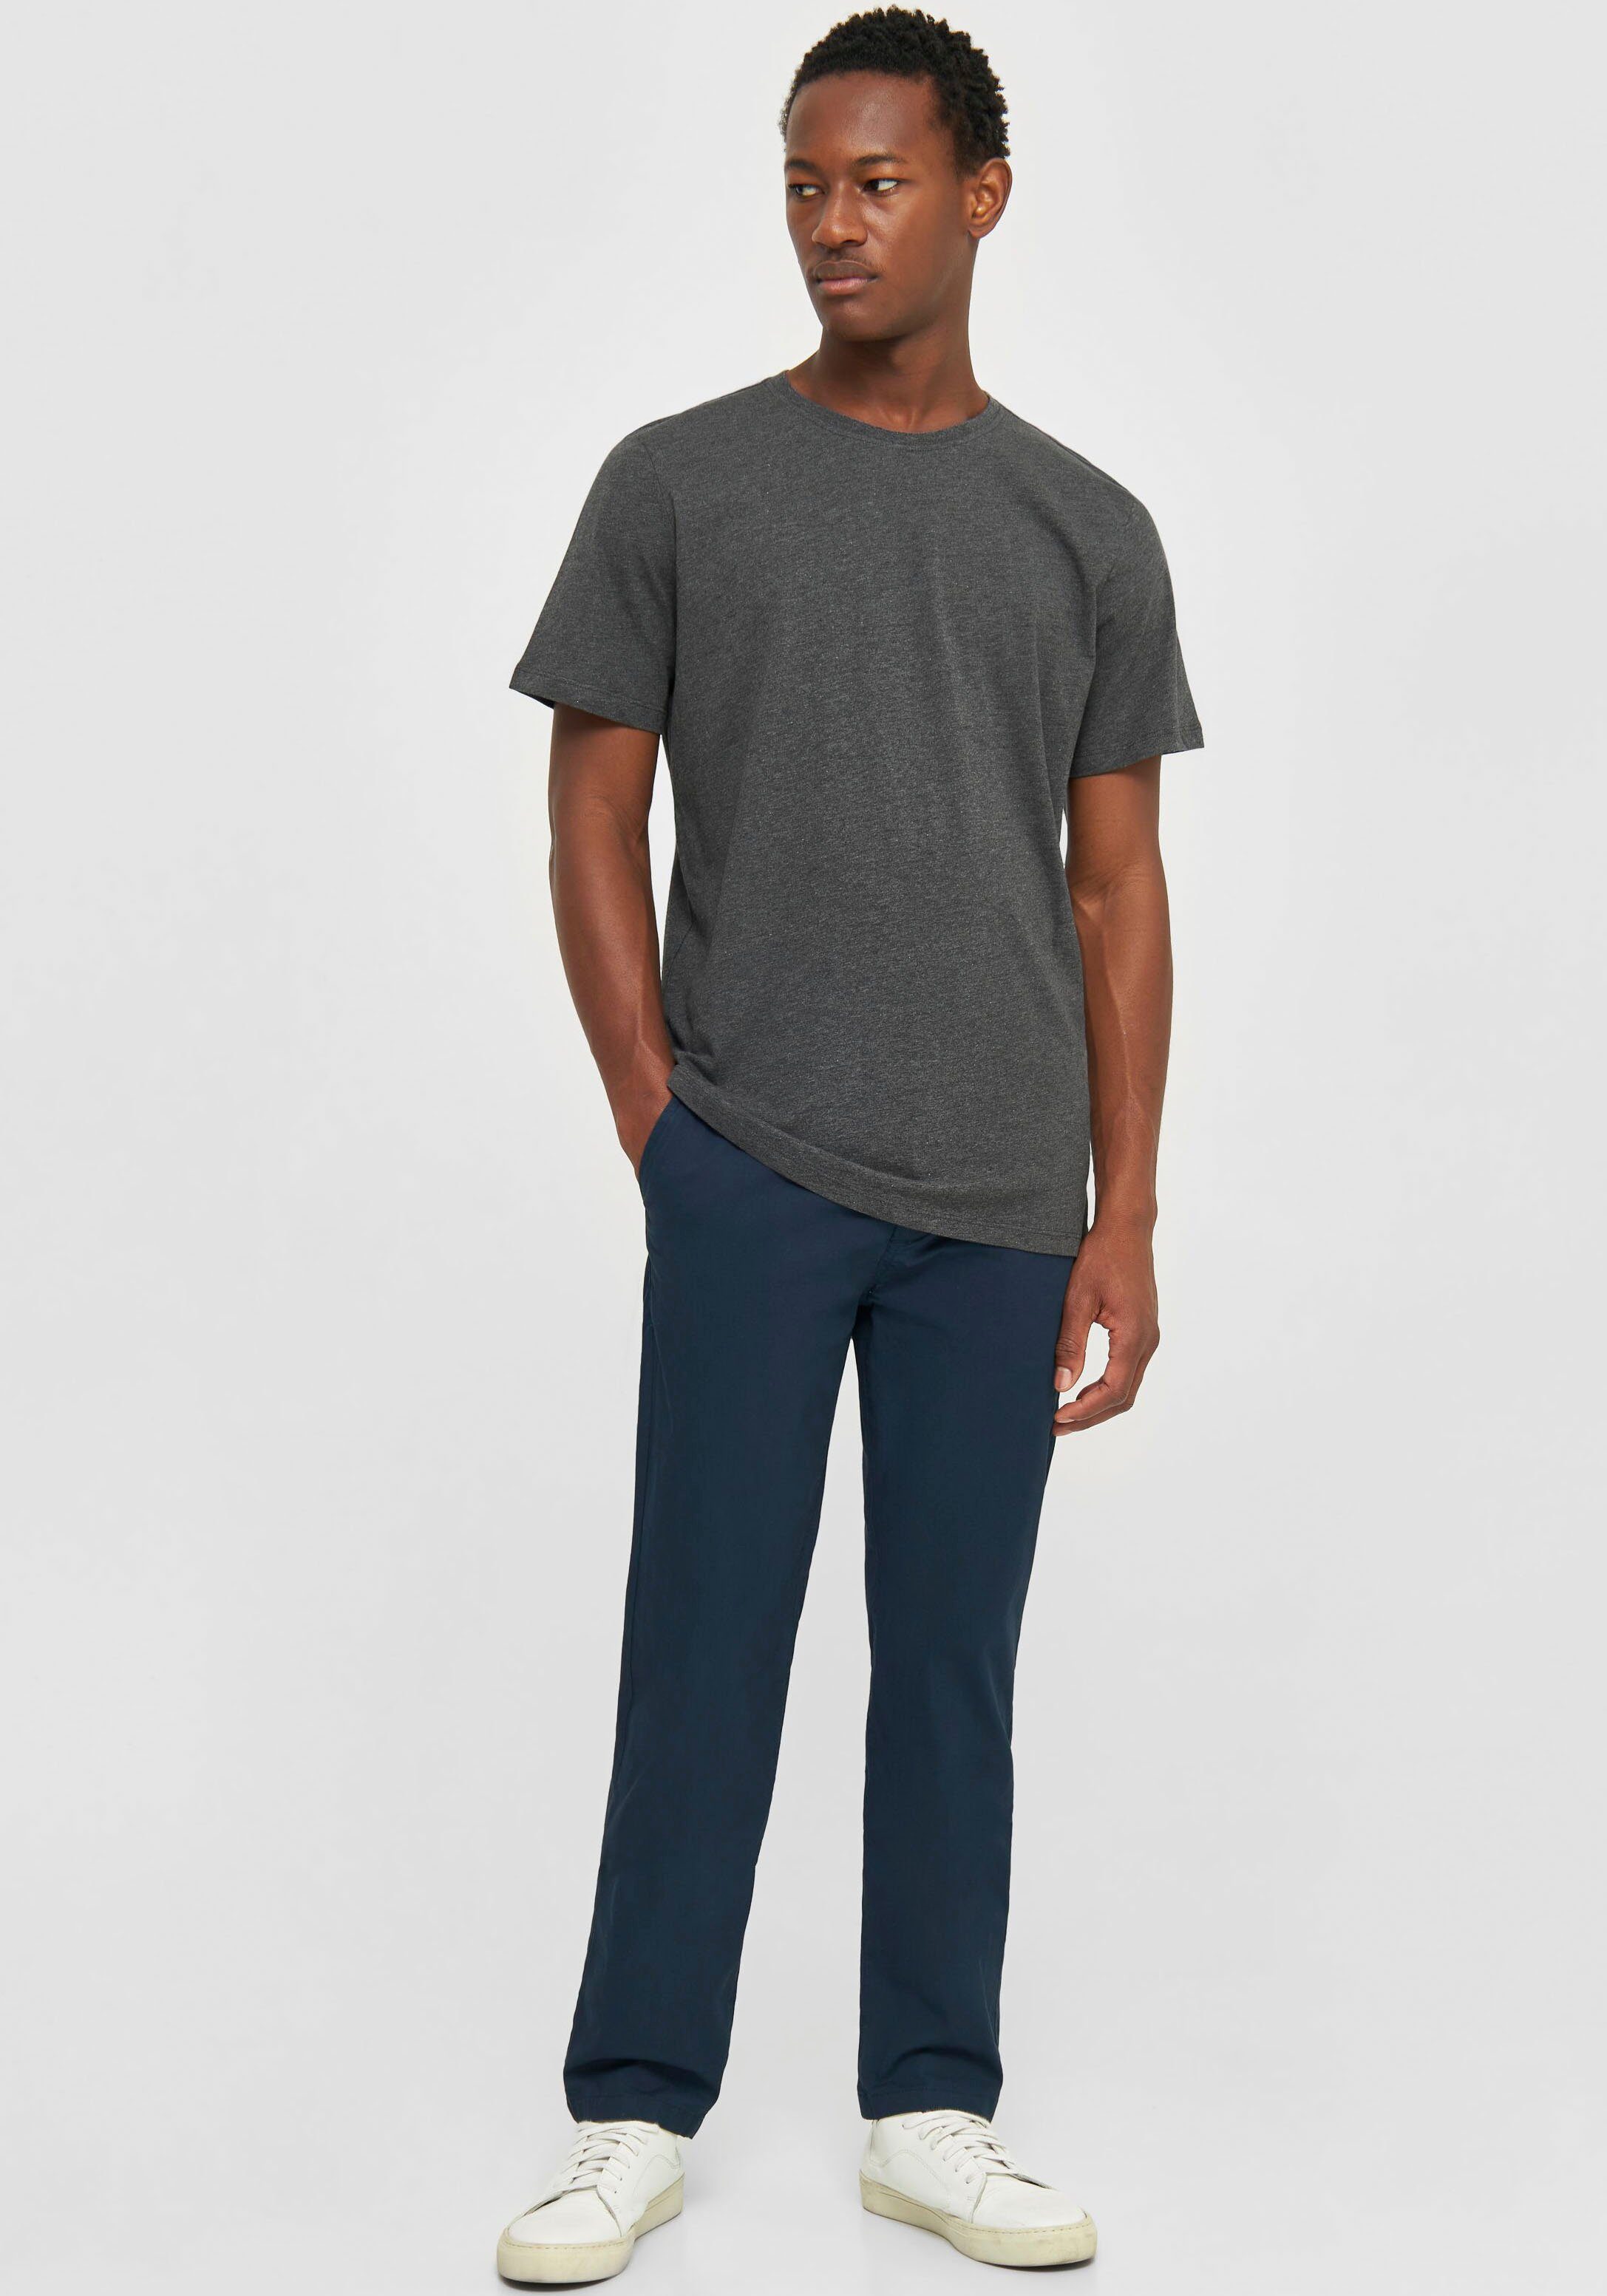 T-Shirt Grey Dark Apparel Shirt in gerader Basic Passform Melange KnowledgeCotton